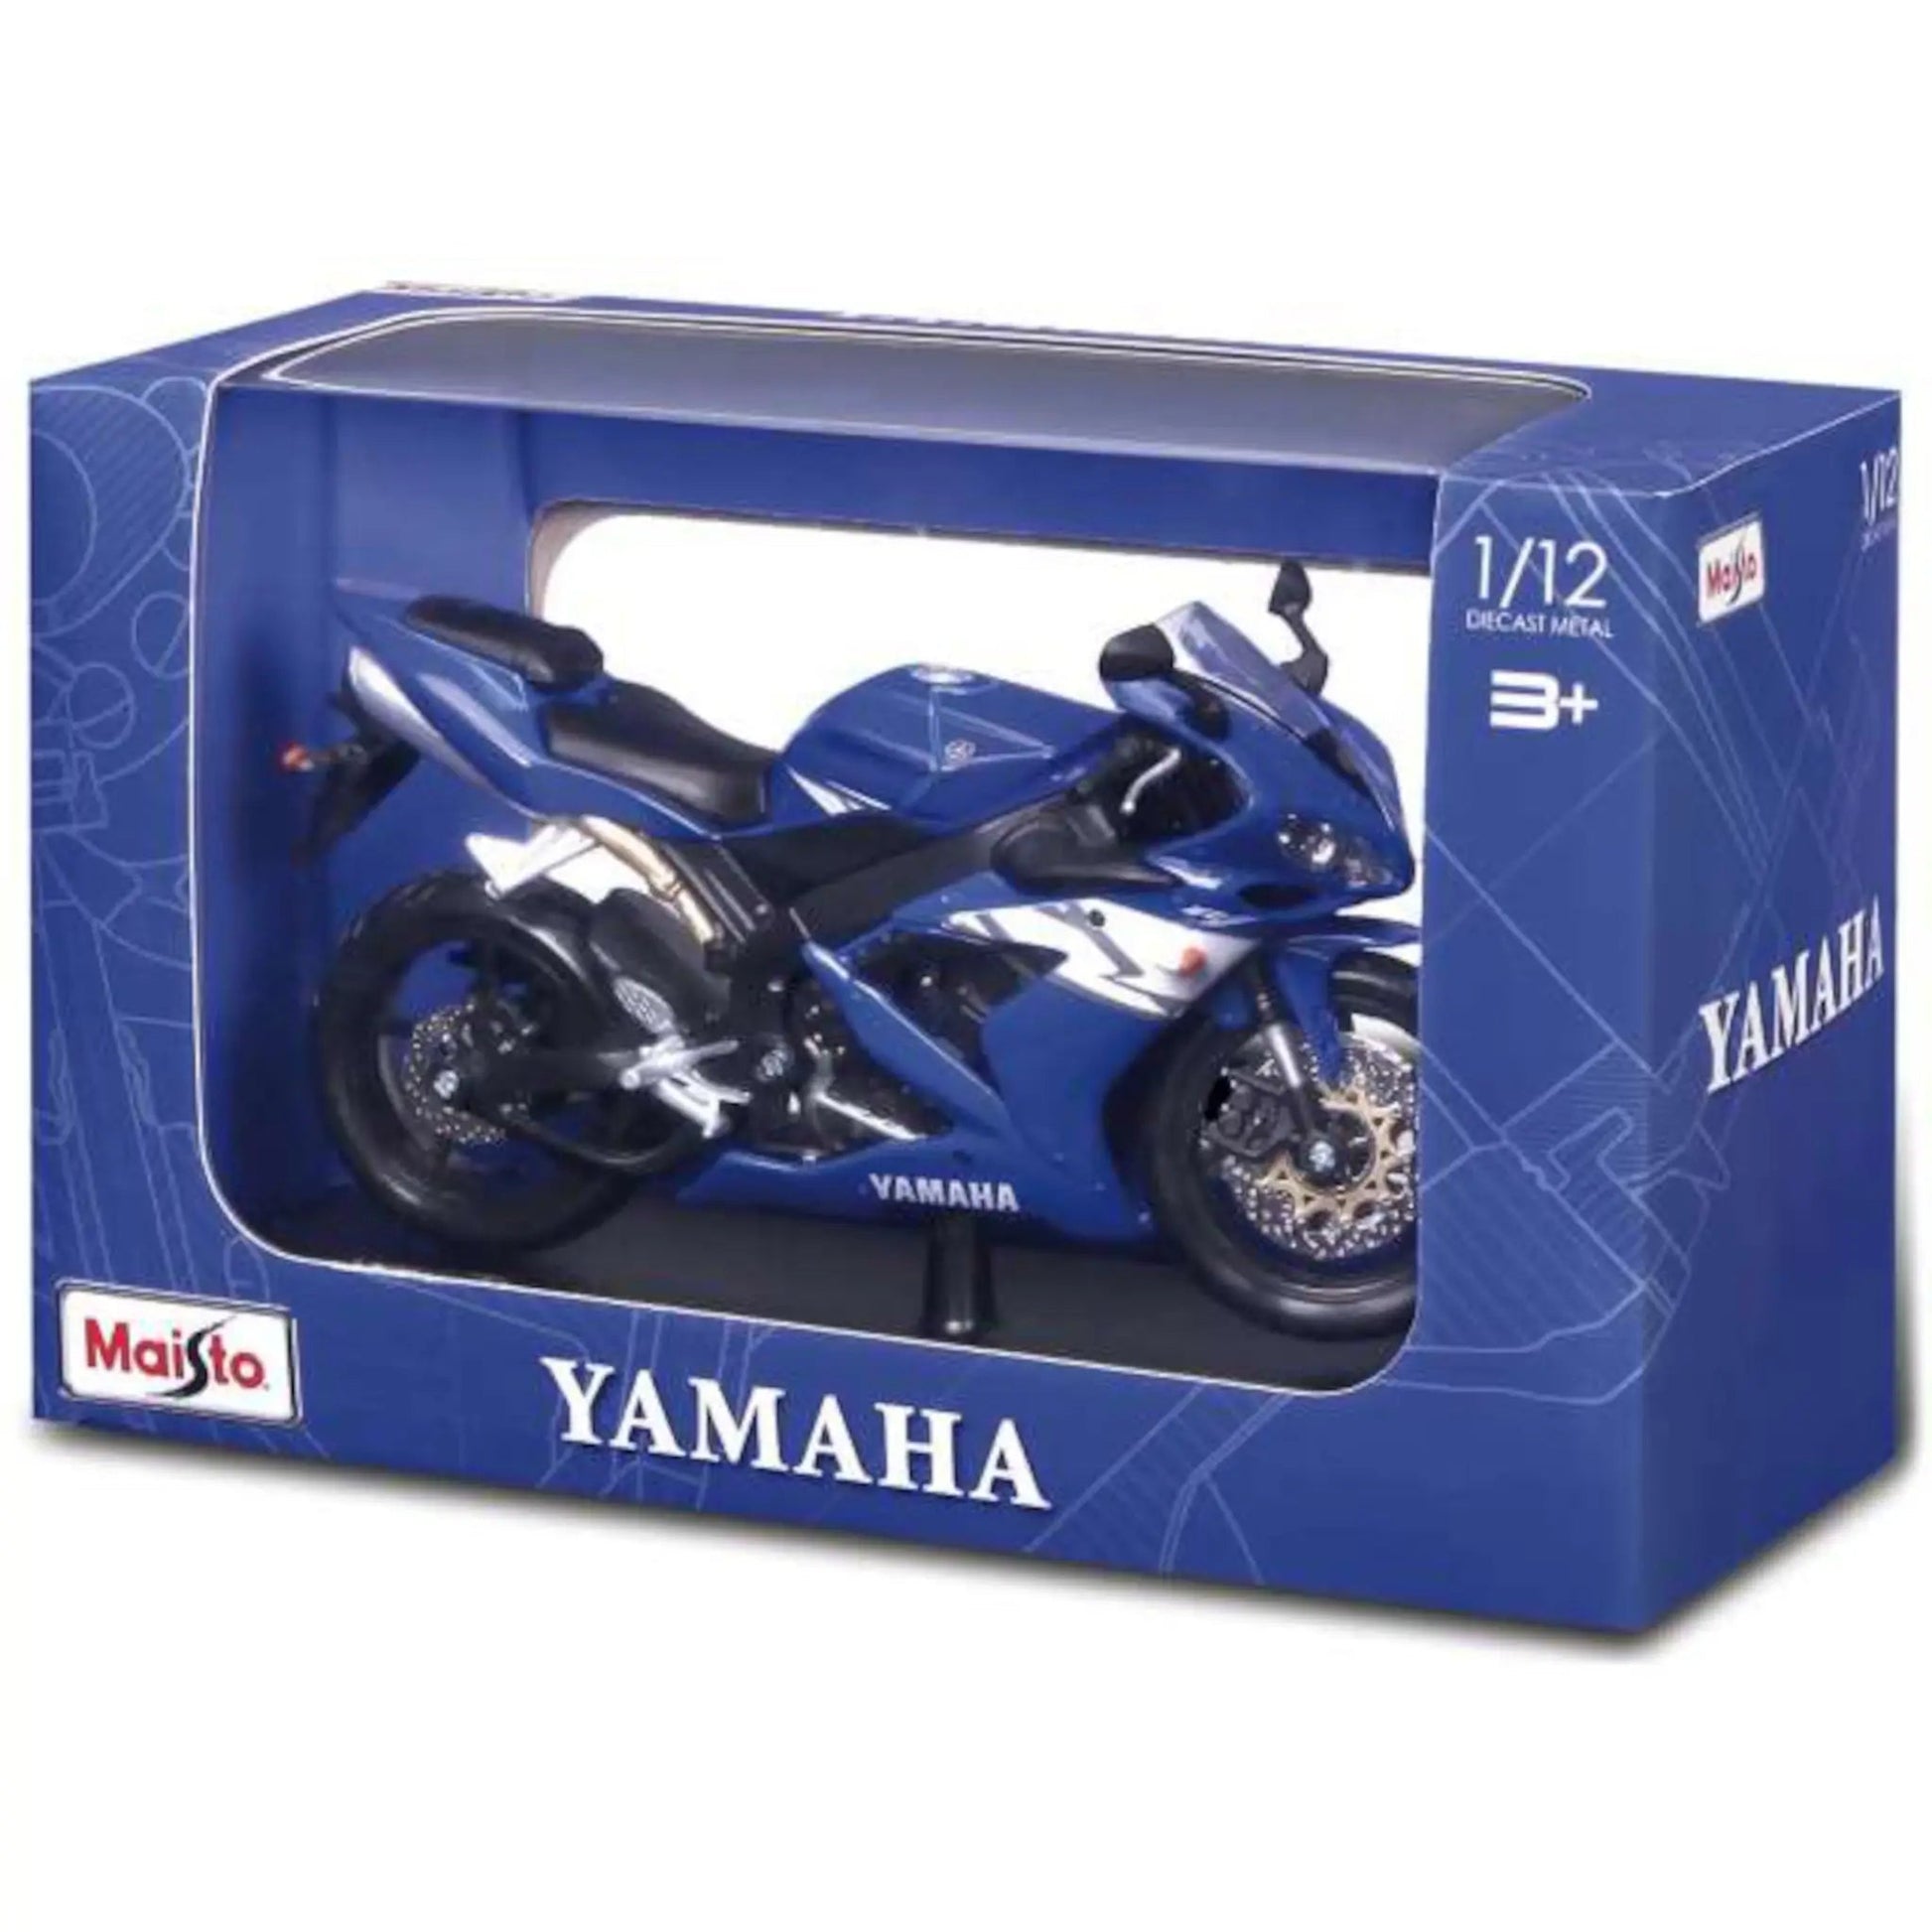 Yamaha YZF-R1 Maisto 1/12 - mai32712